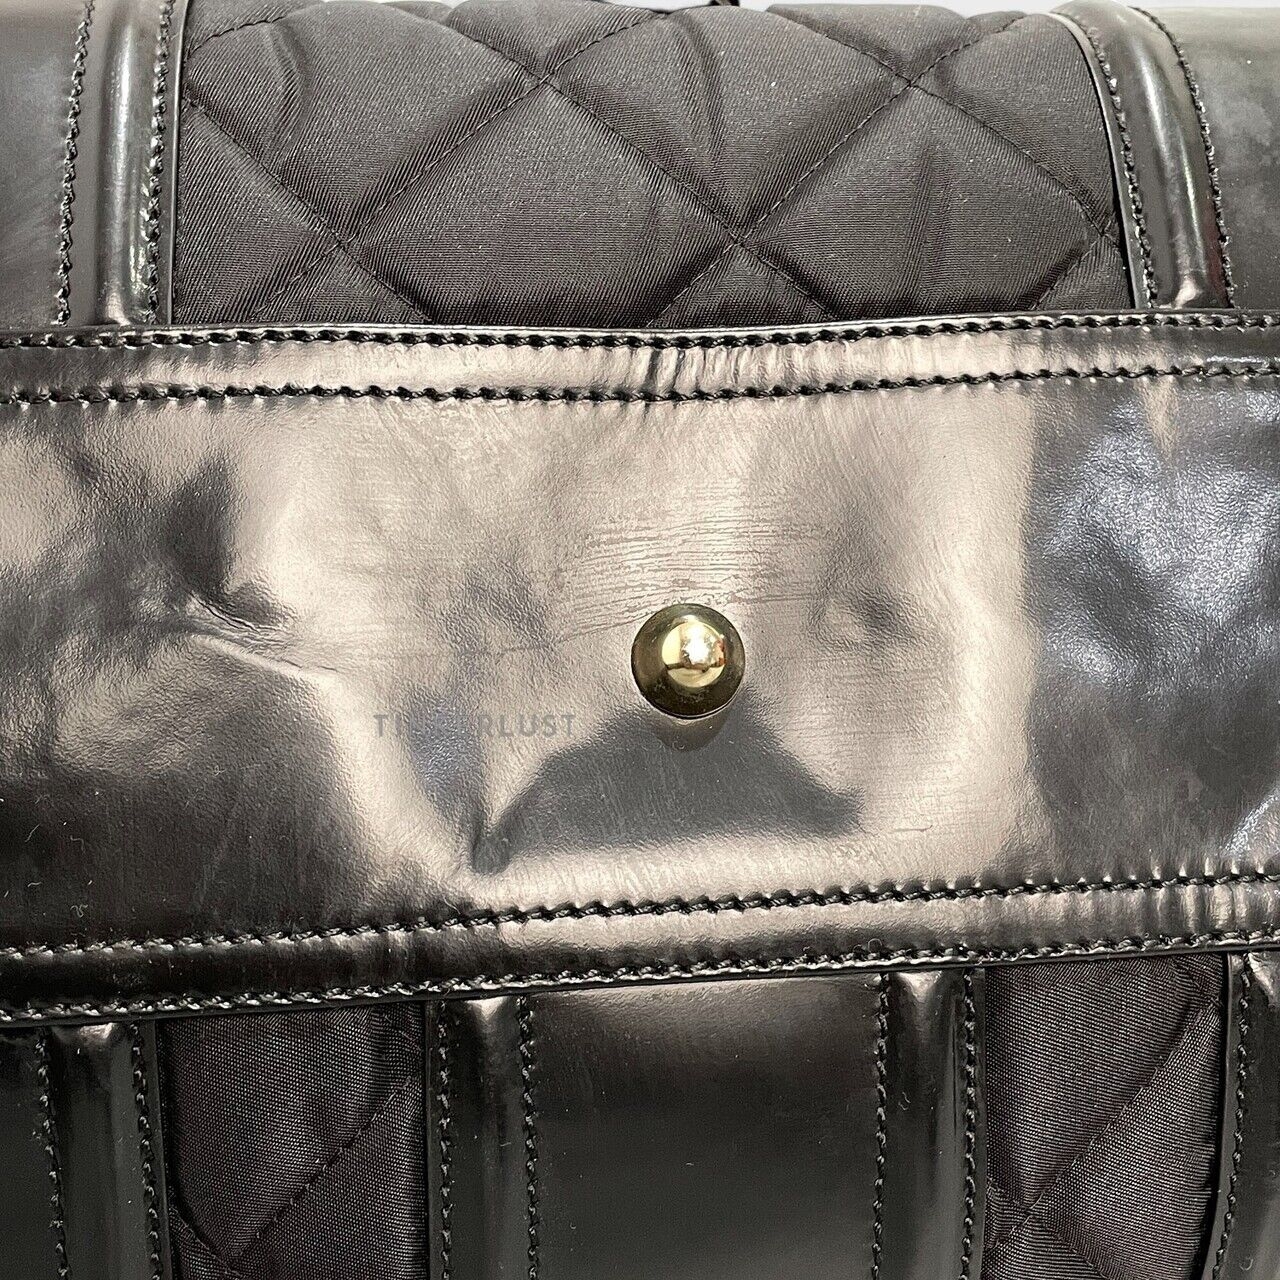 Burberry Black Cloth Handbag